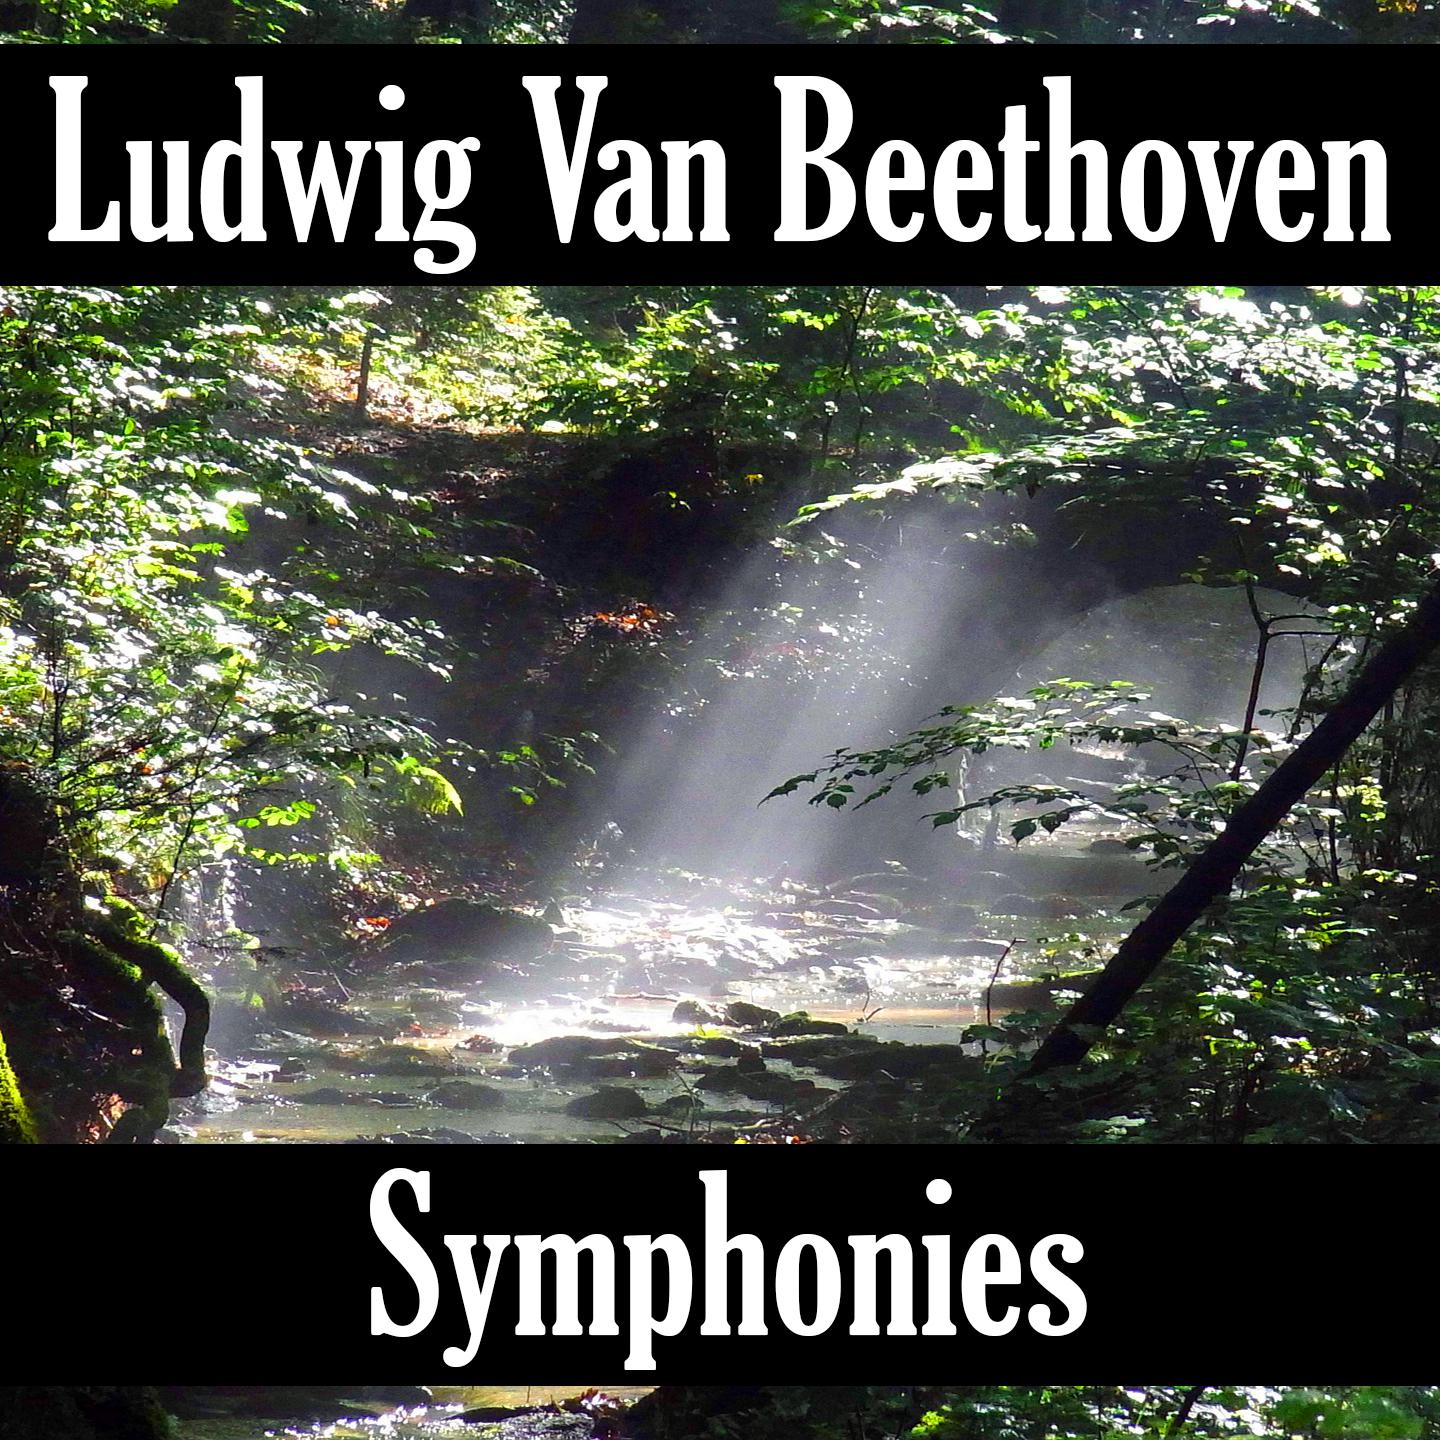 Ludwig van Beethoven: Symphonies